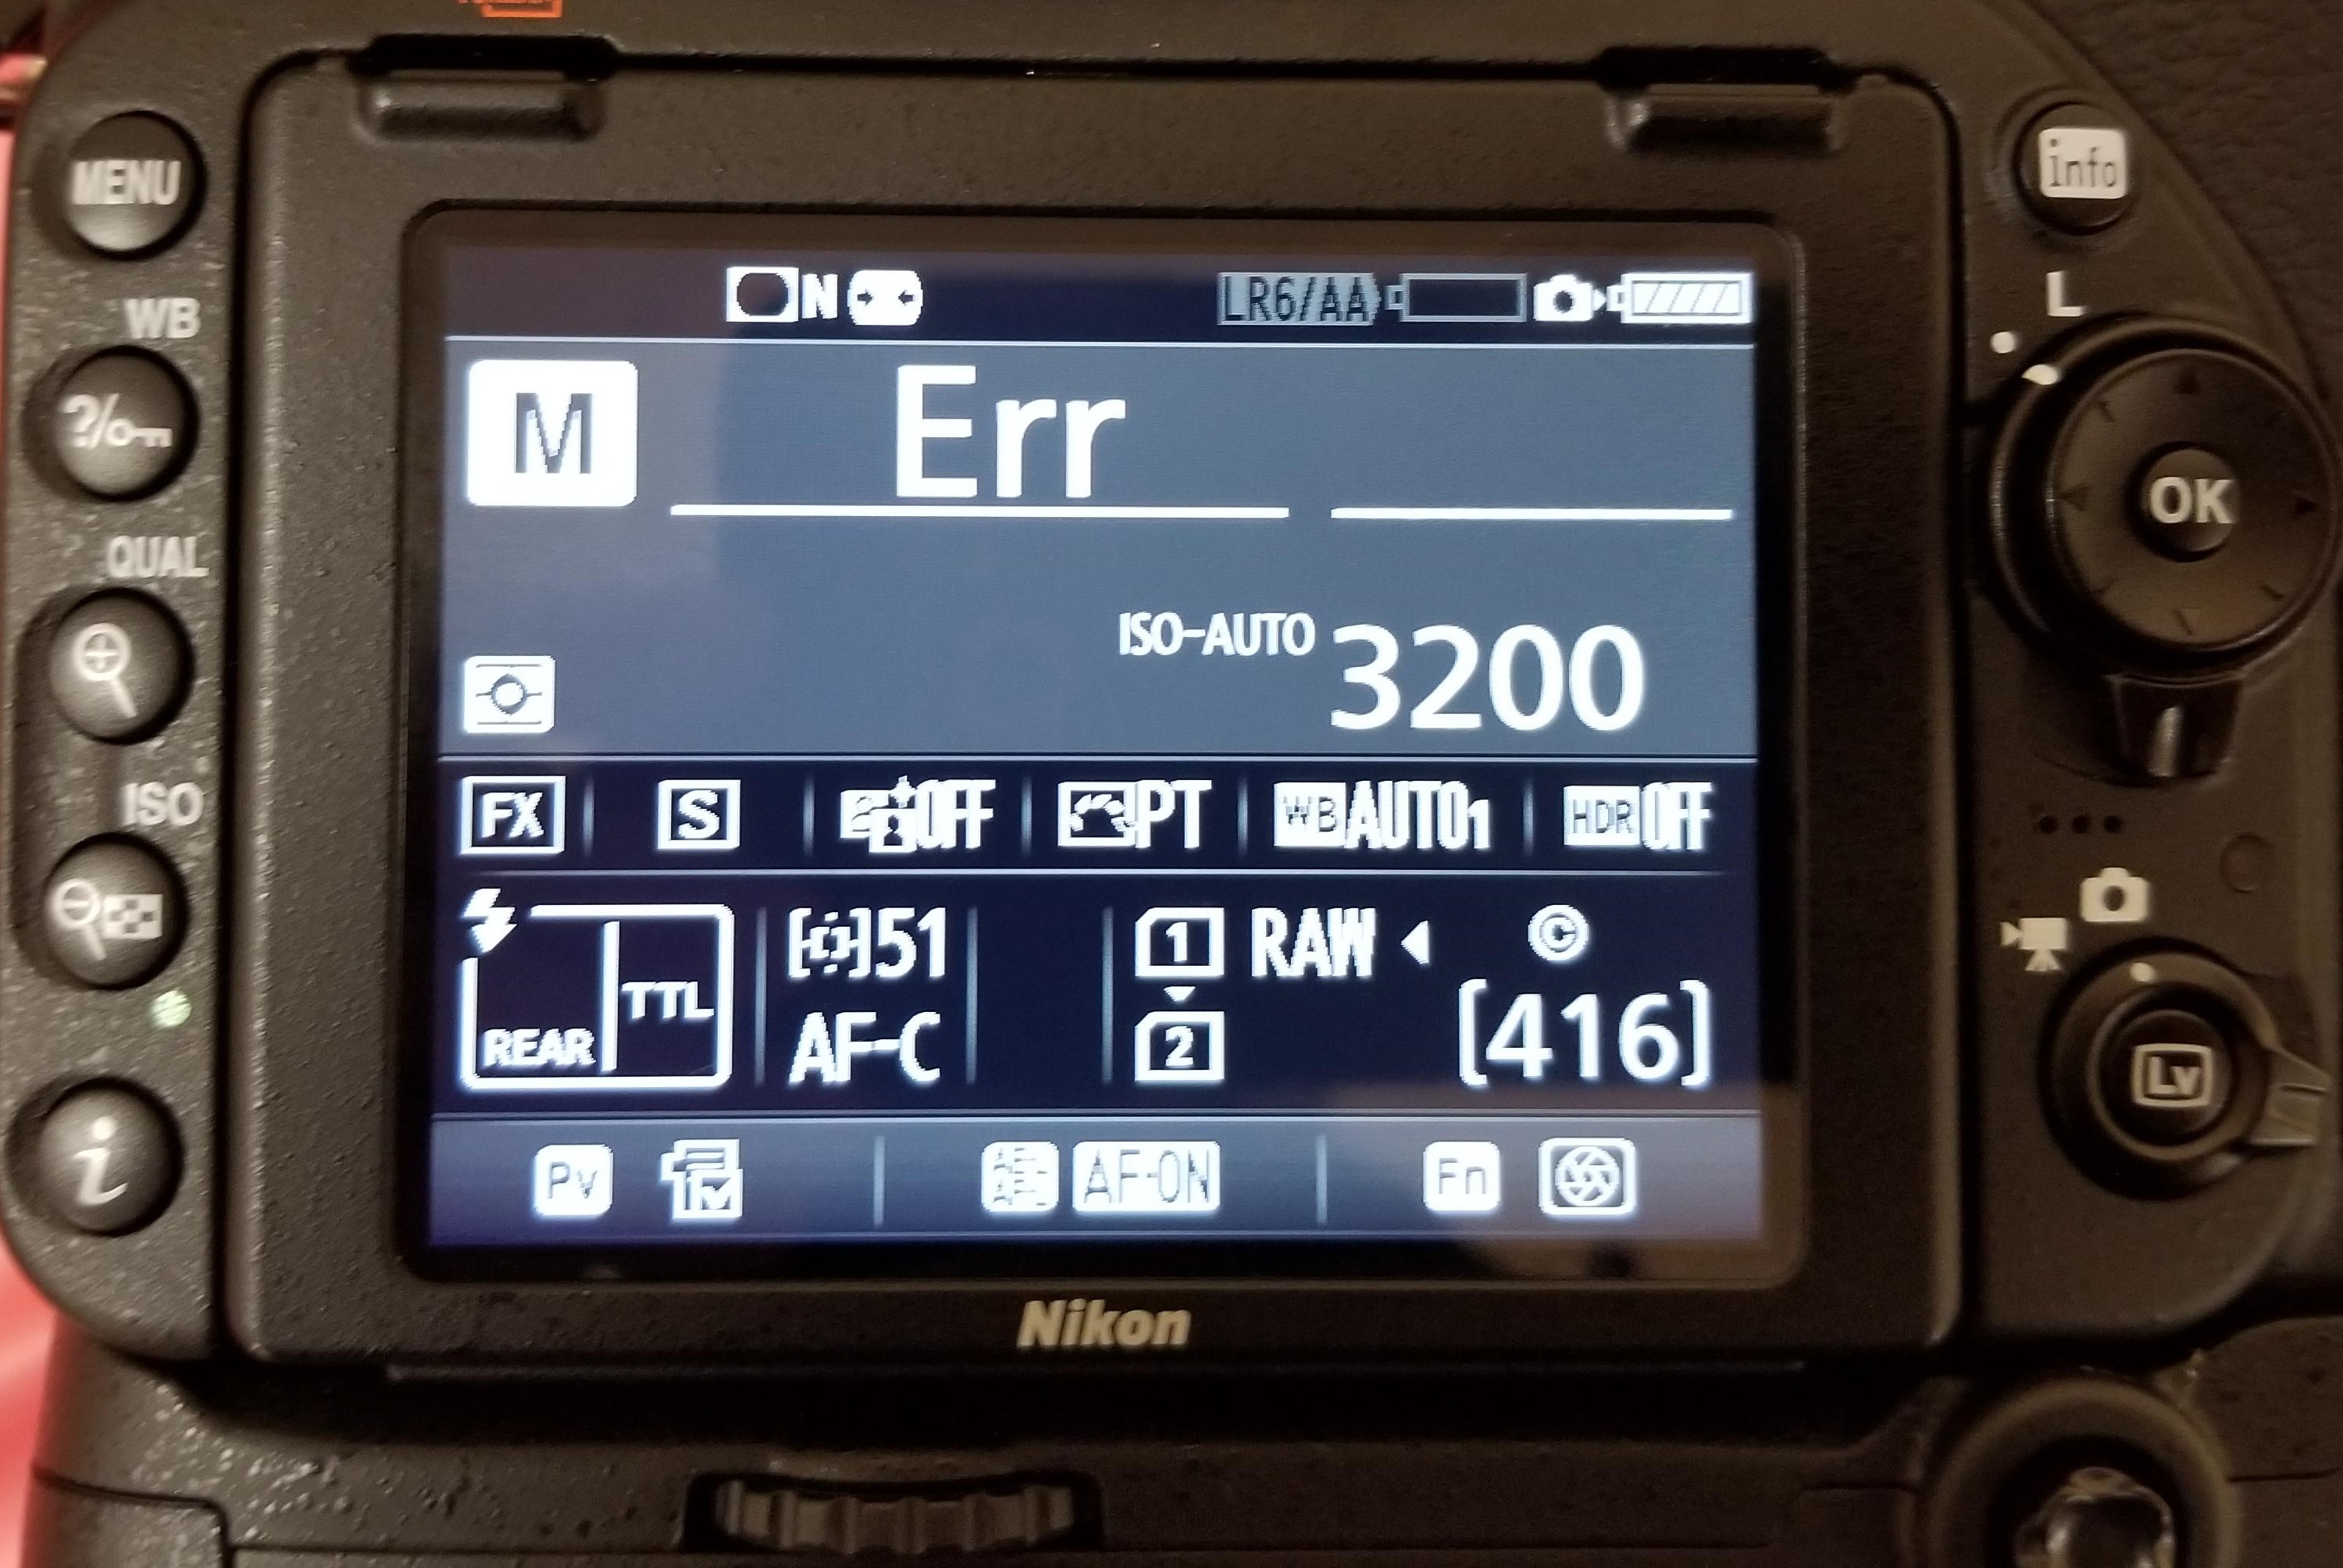 Obtén el error del objetivo de la cámara - ERR, FEE, For, E, etc.